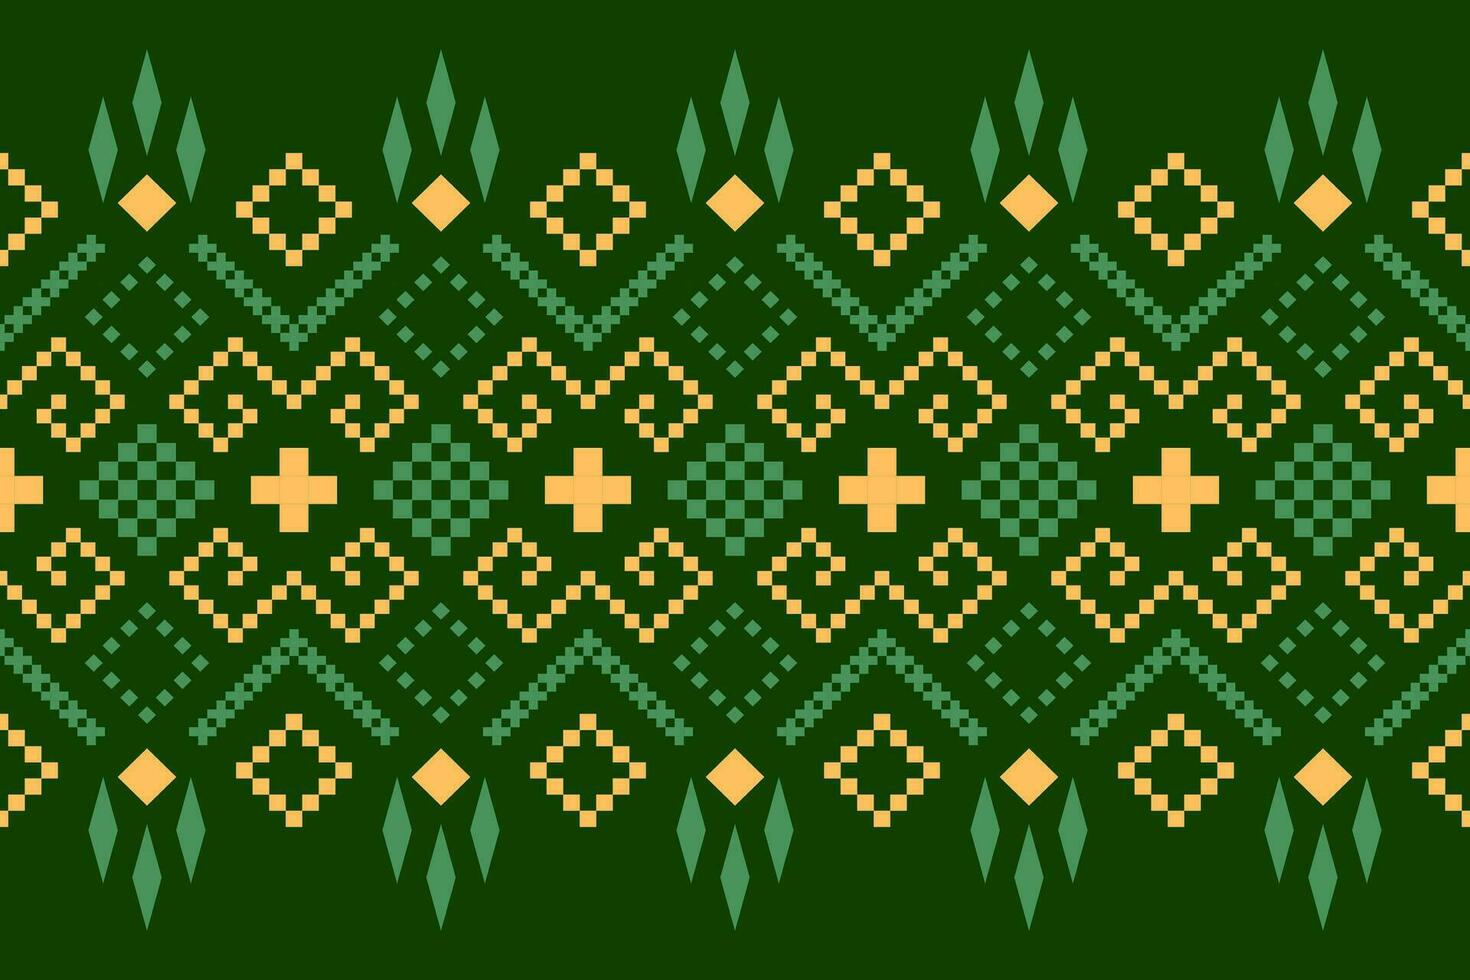 verde attraversare punto colorato geometrico tradizionale etnico modello ikat senza soluzione di continuità modello confine astratto design per tessuto Stampa stoffa vestito tappeto le tende e sarong azteco africano indiano indonesiano vettore